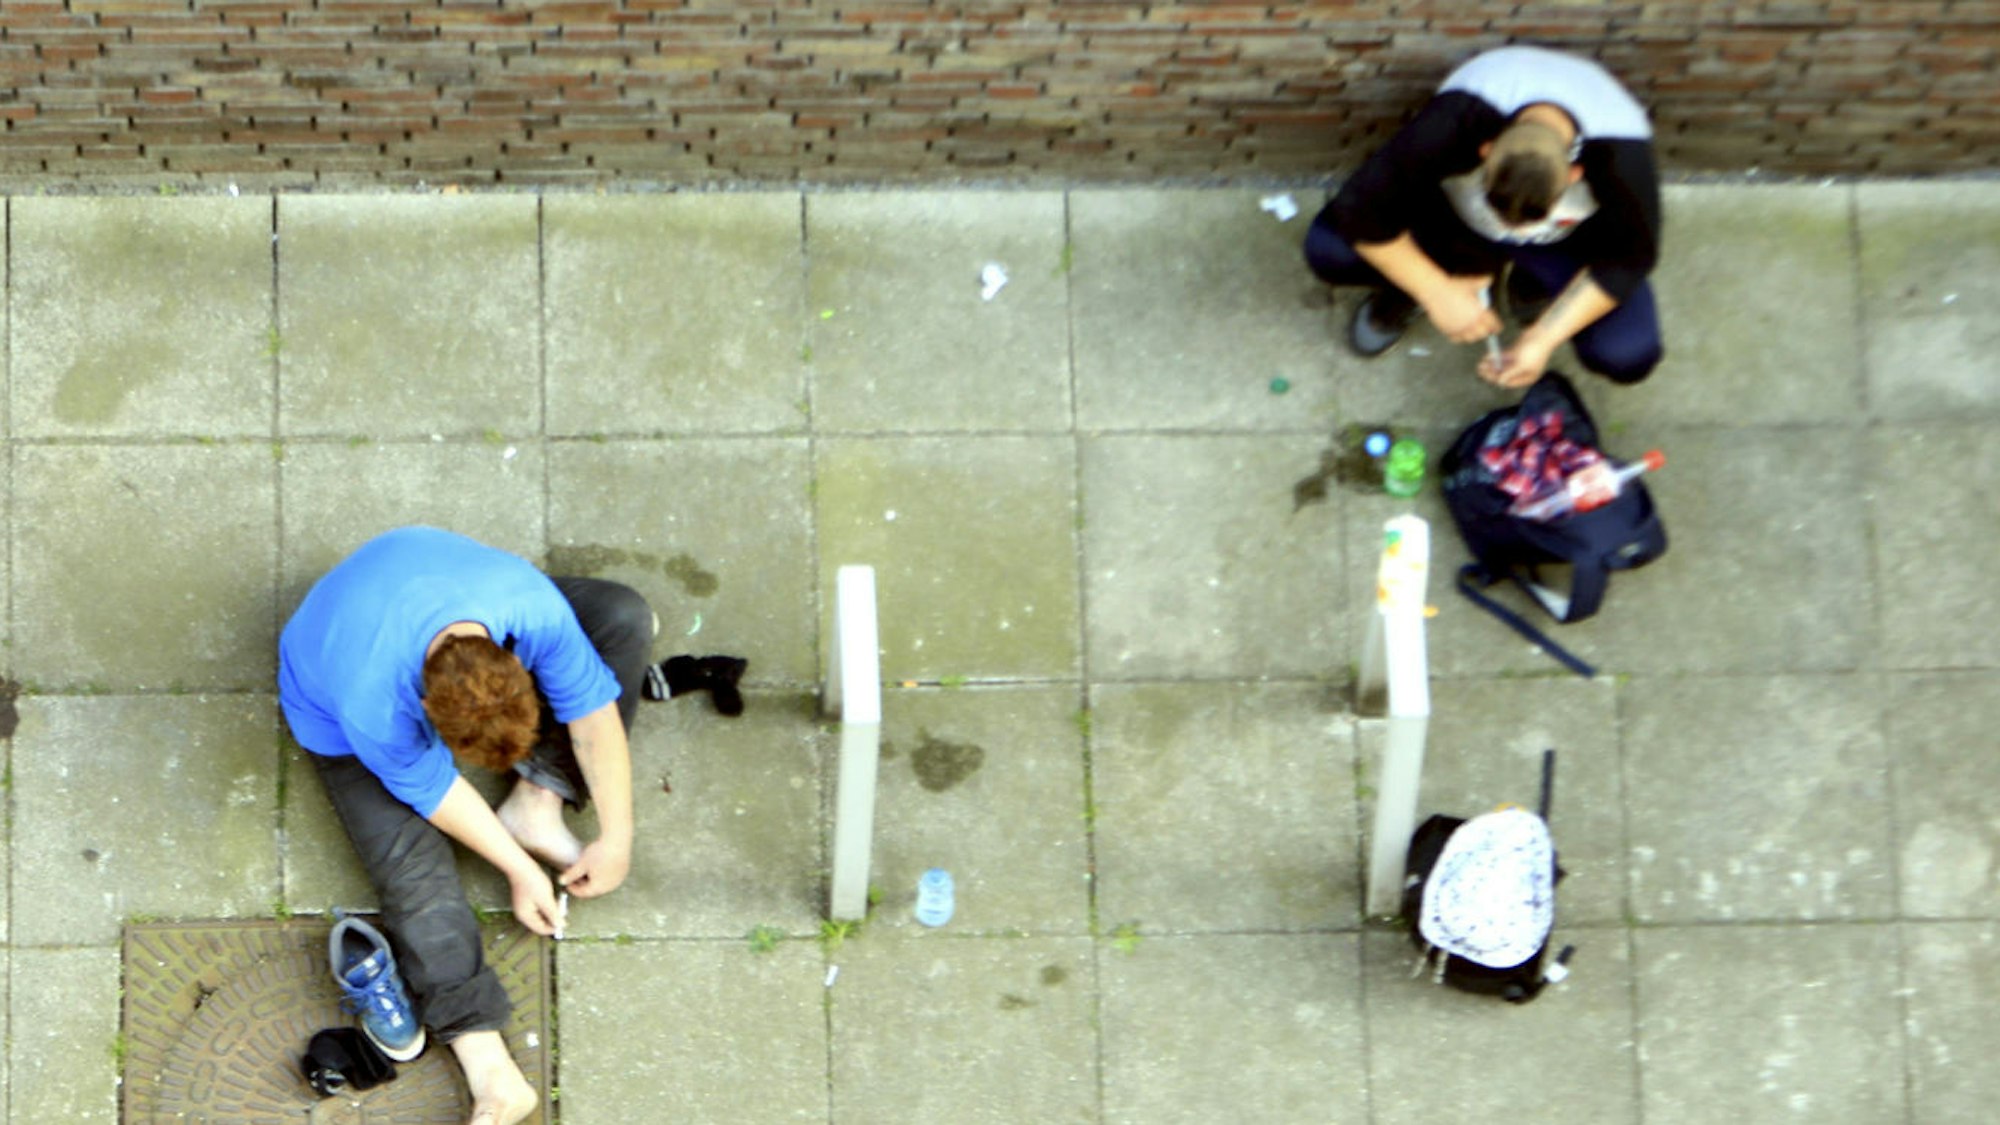 Zwei Männer sitzen auf dem Boden und konsumieren Heroin.